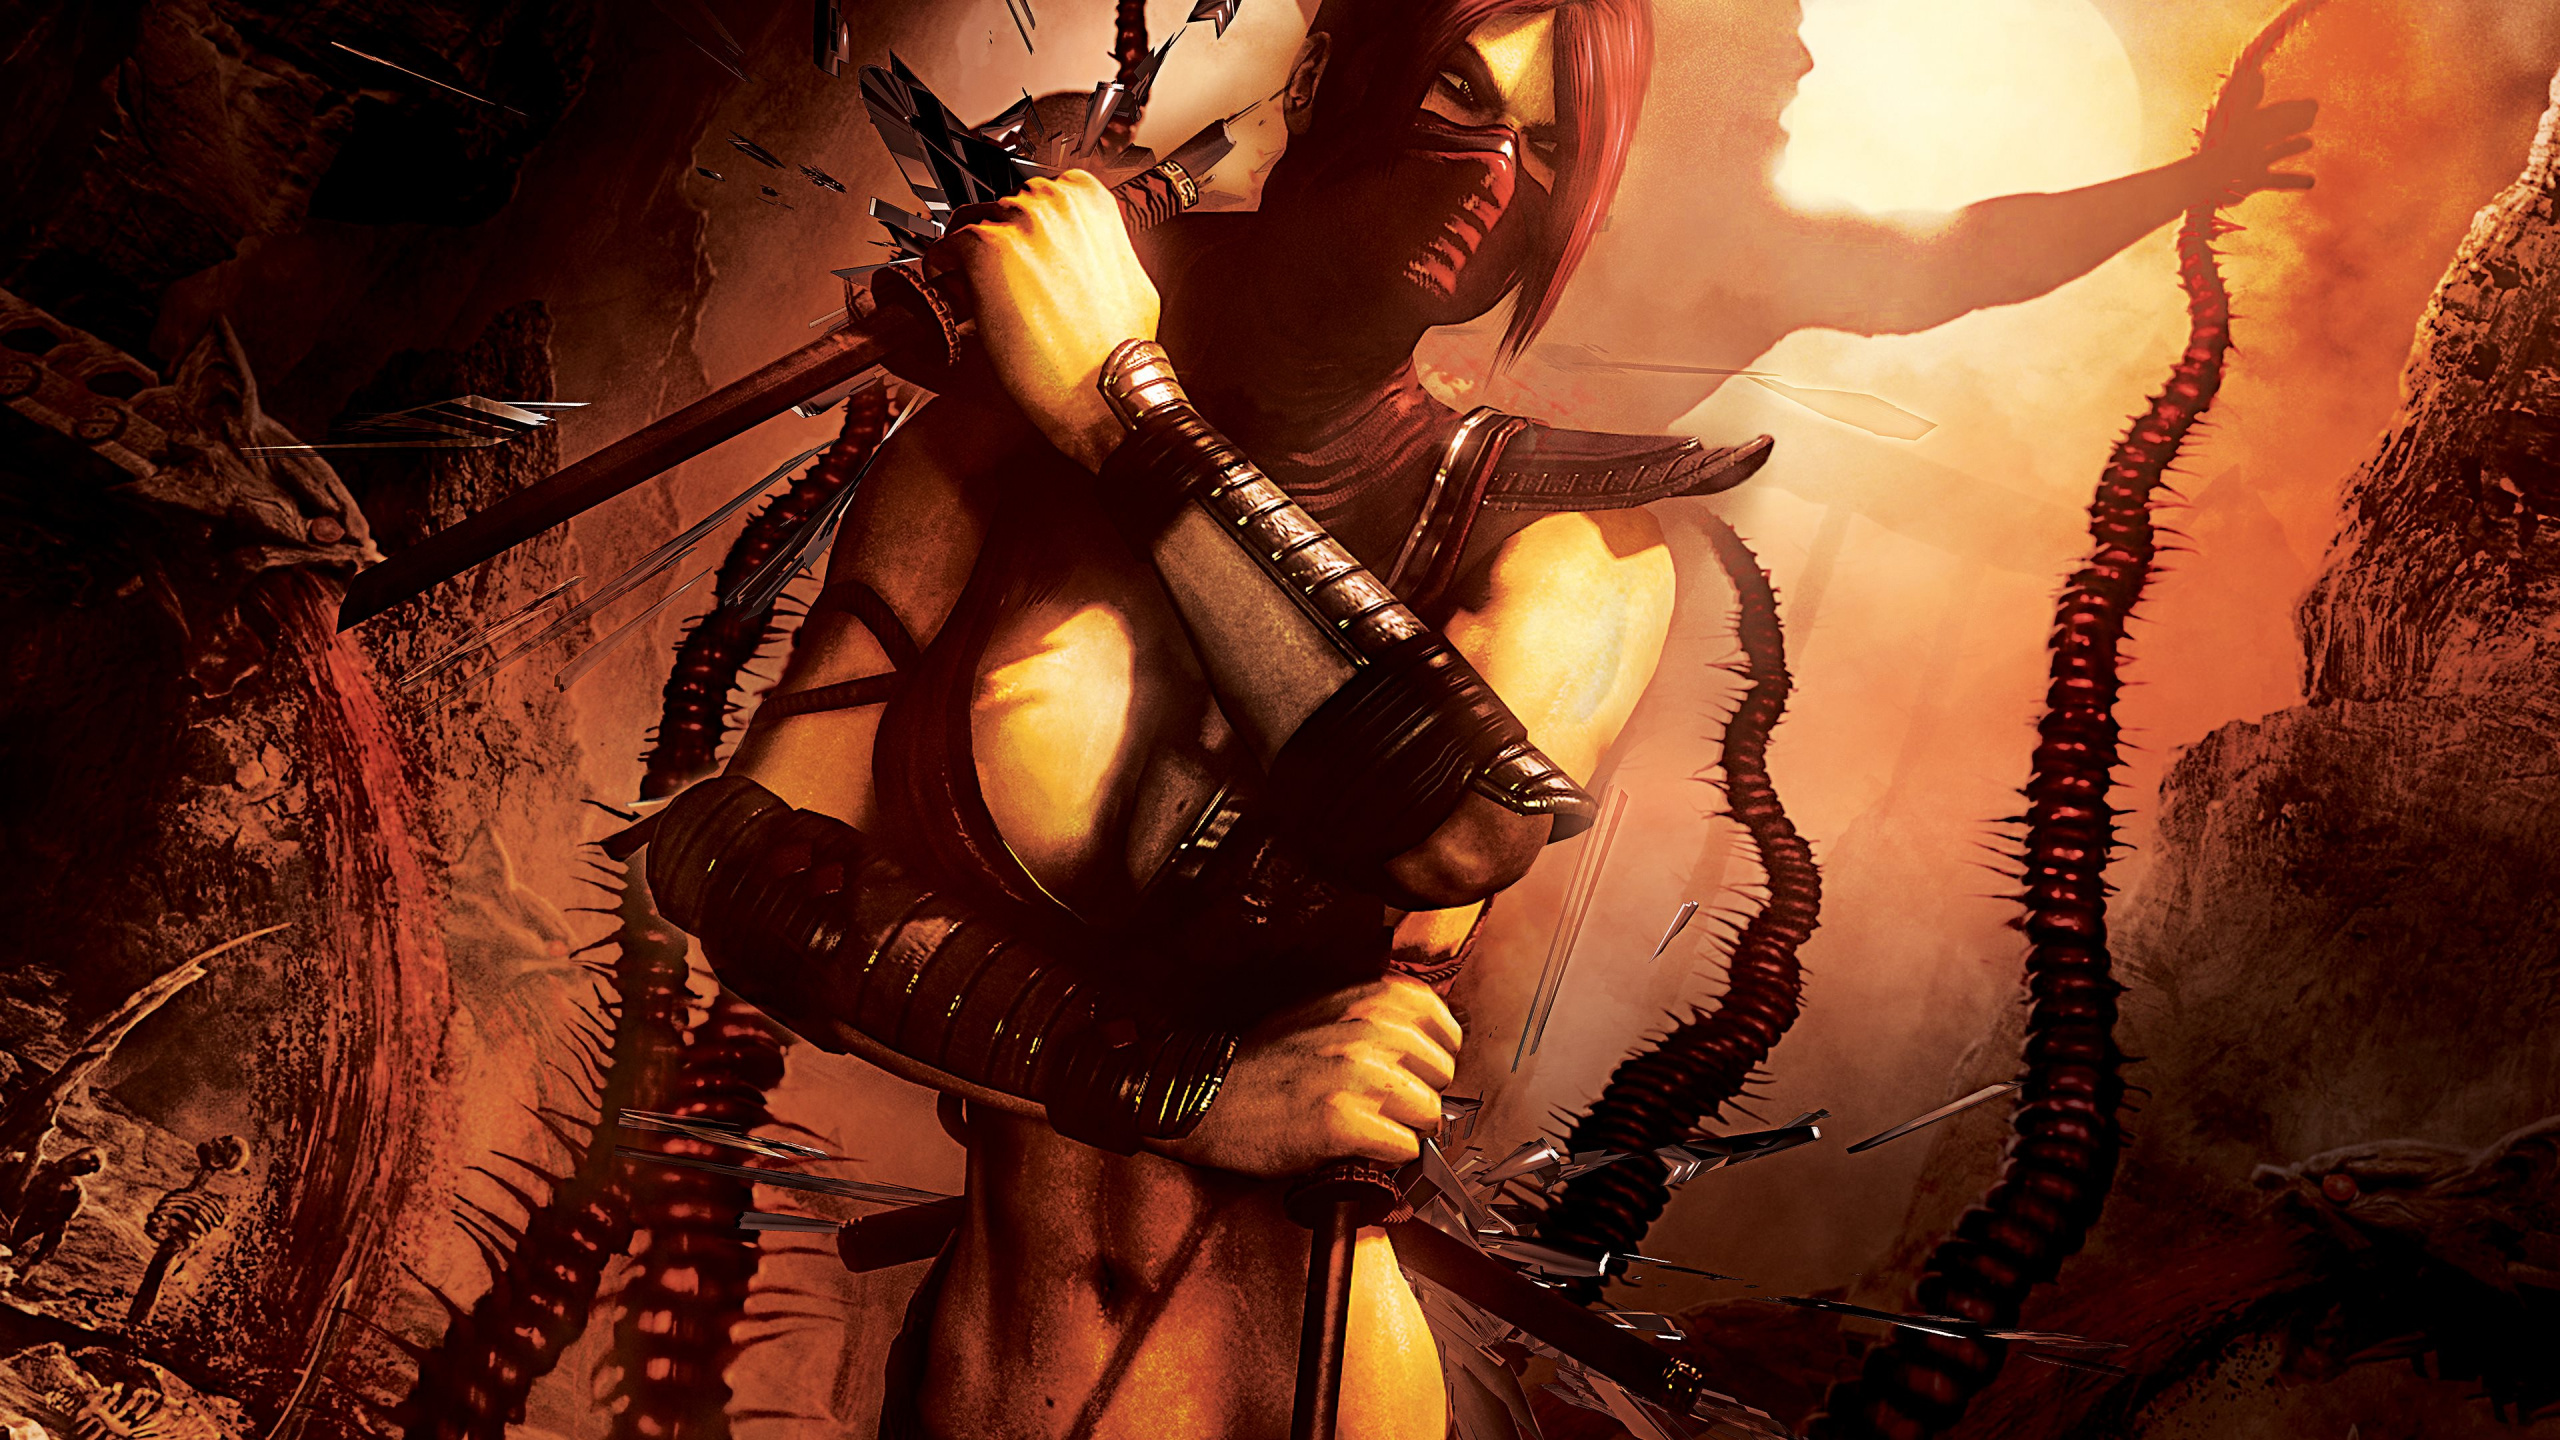 Mortal Kombat, Mortal Kombat x, Mortal Kombat 11, Escarlata, Mujer de Guerrero. Wallpaper in 2560x1440 Resolution